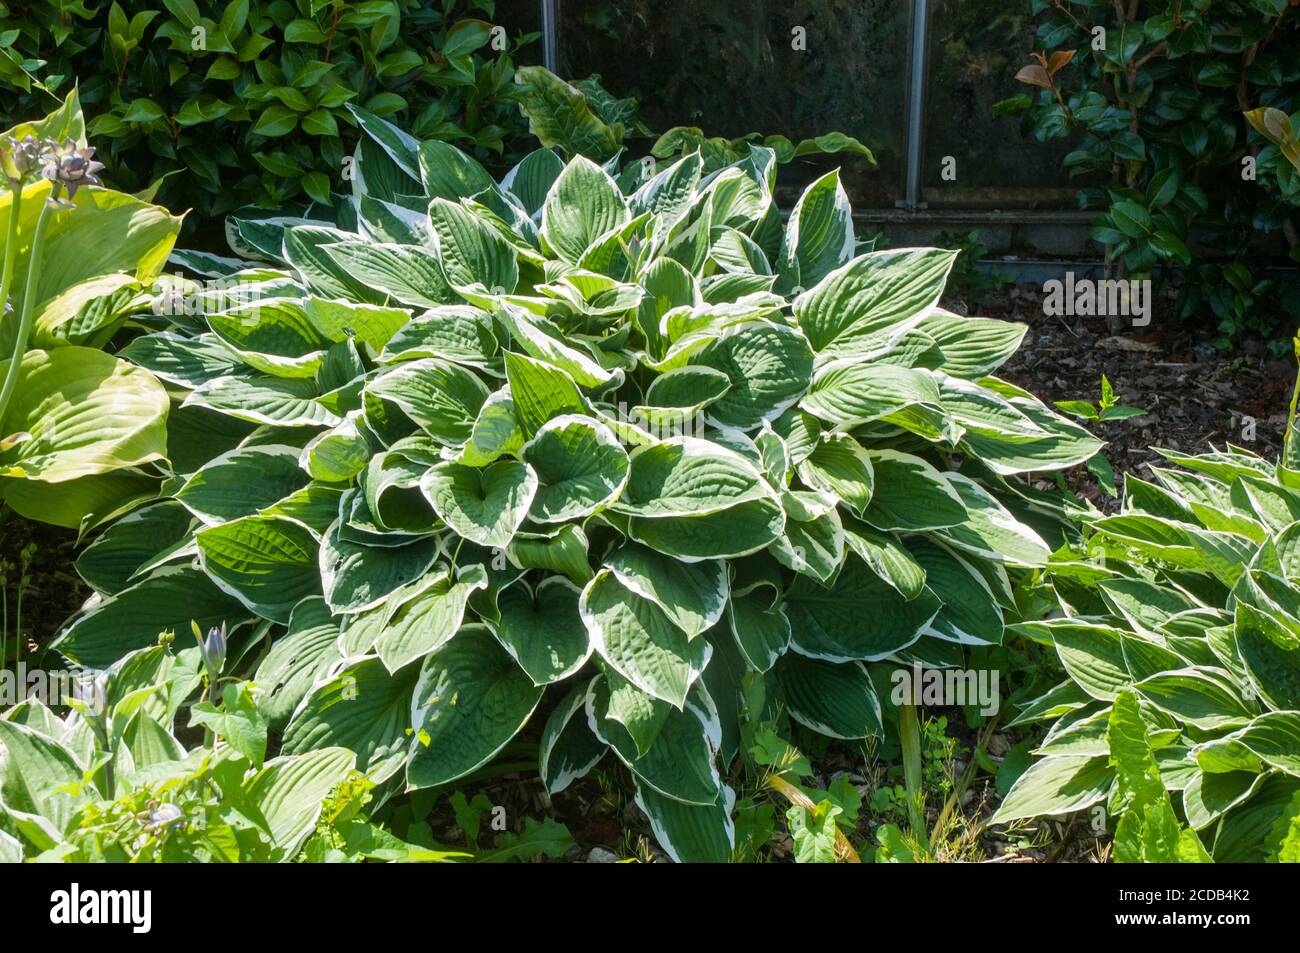 Grand chant de plante Hosta montrant la variante verte et blanche feuilles à marge irrégulière un clamp entièrement robuste formant herbacé vivace Banque D'Images